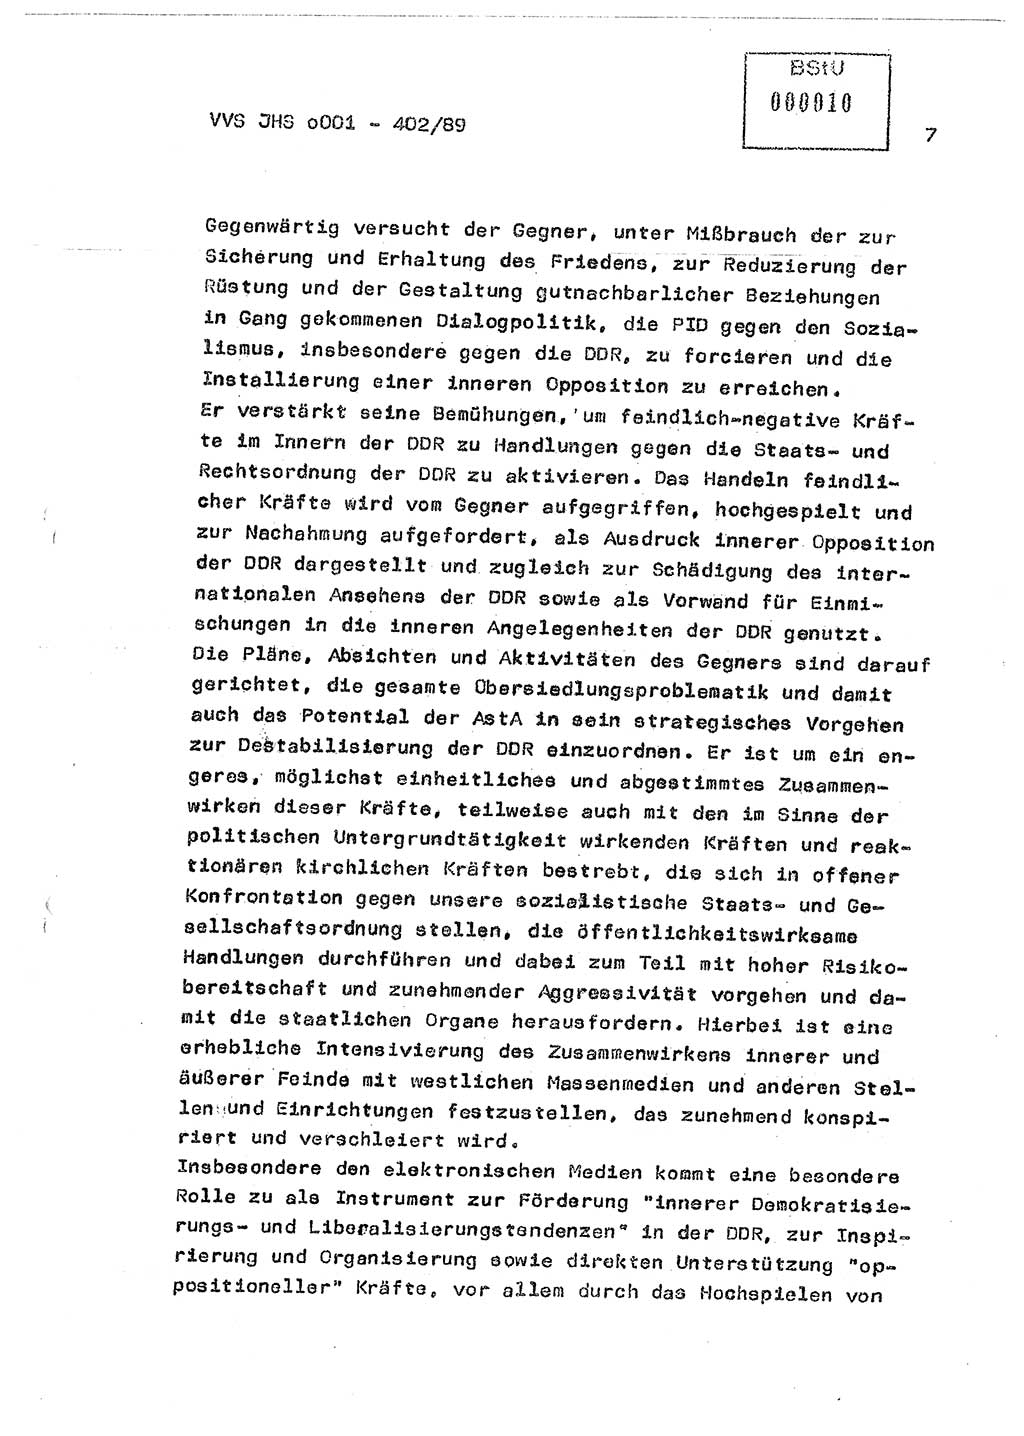 Diplomarbeit Major Günter Müller (HA Ⅸ/9), Ministerium für Staatssicherheit (MfS) [Deutsche Demokratische Republik (DDR)], Juristische Hochschule (JHS), Vertrauliche Verschlußsache (VVS) o001-402/89, Potsdam 1989, Seite 7 (Dipl.-Arb. MfS DDR JHS VVS o001-402/89 1989, S. 7)